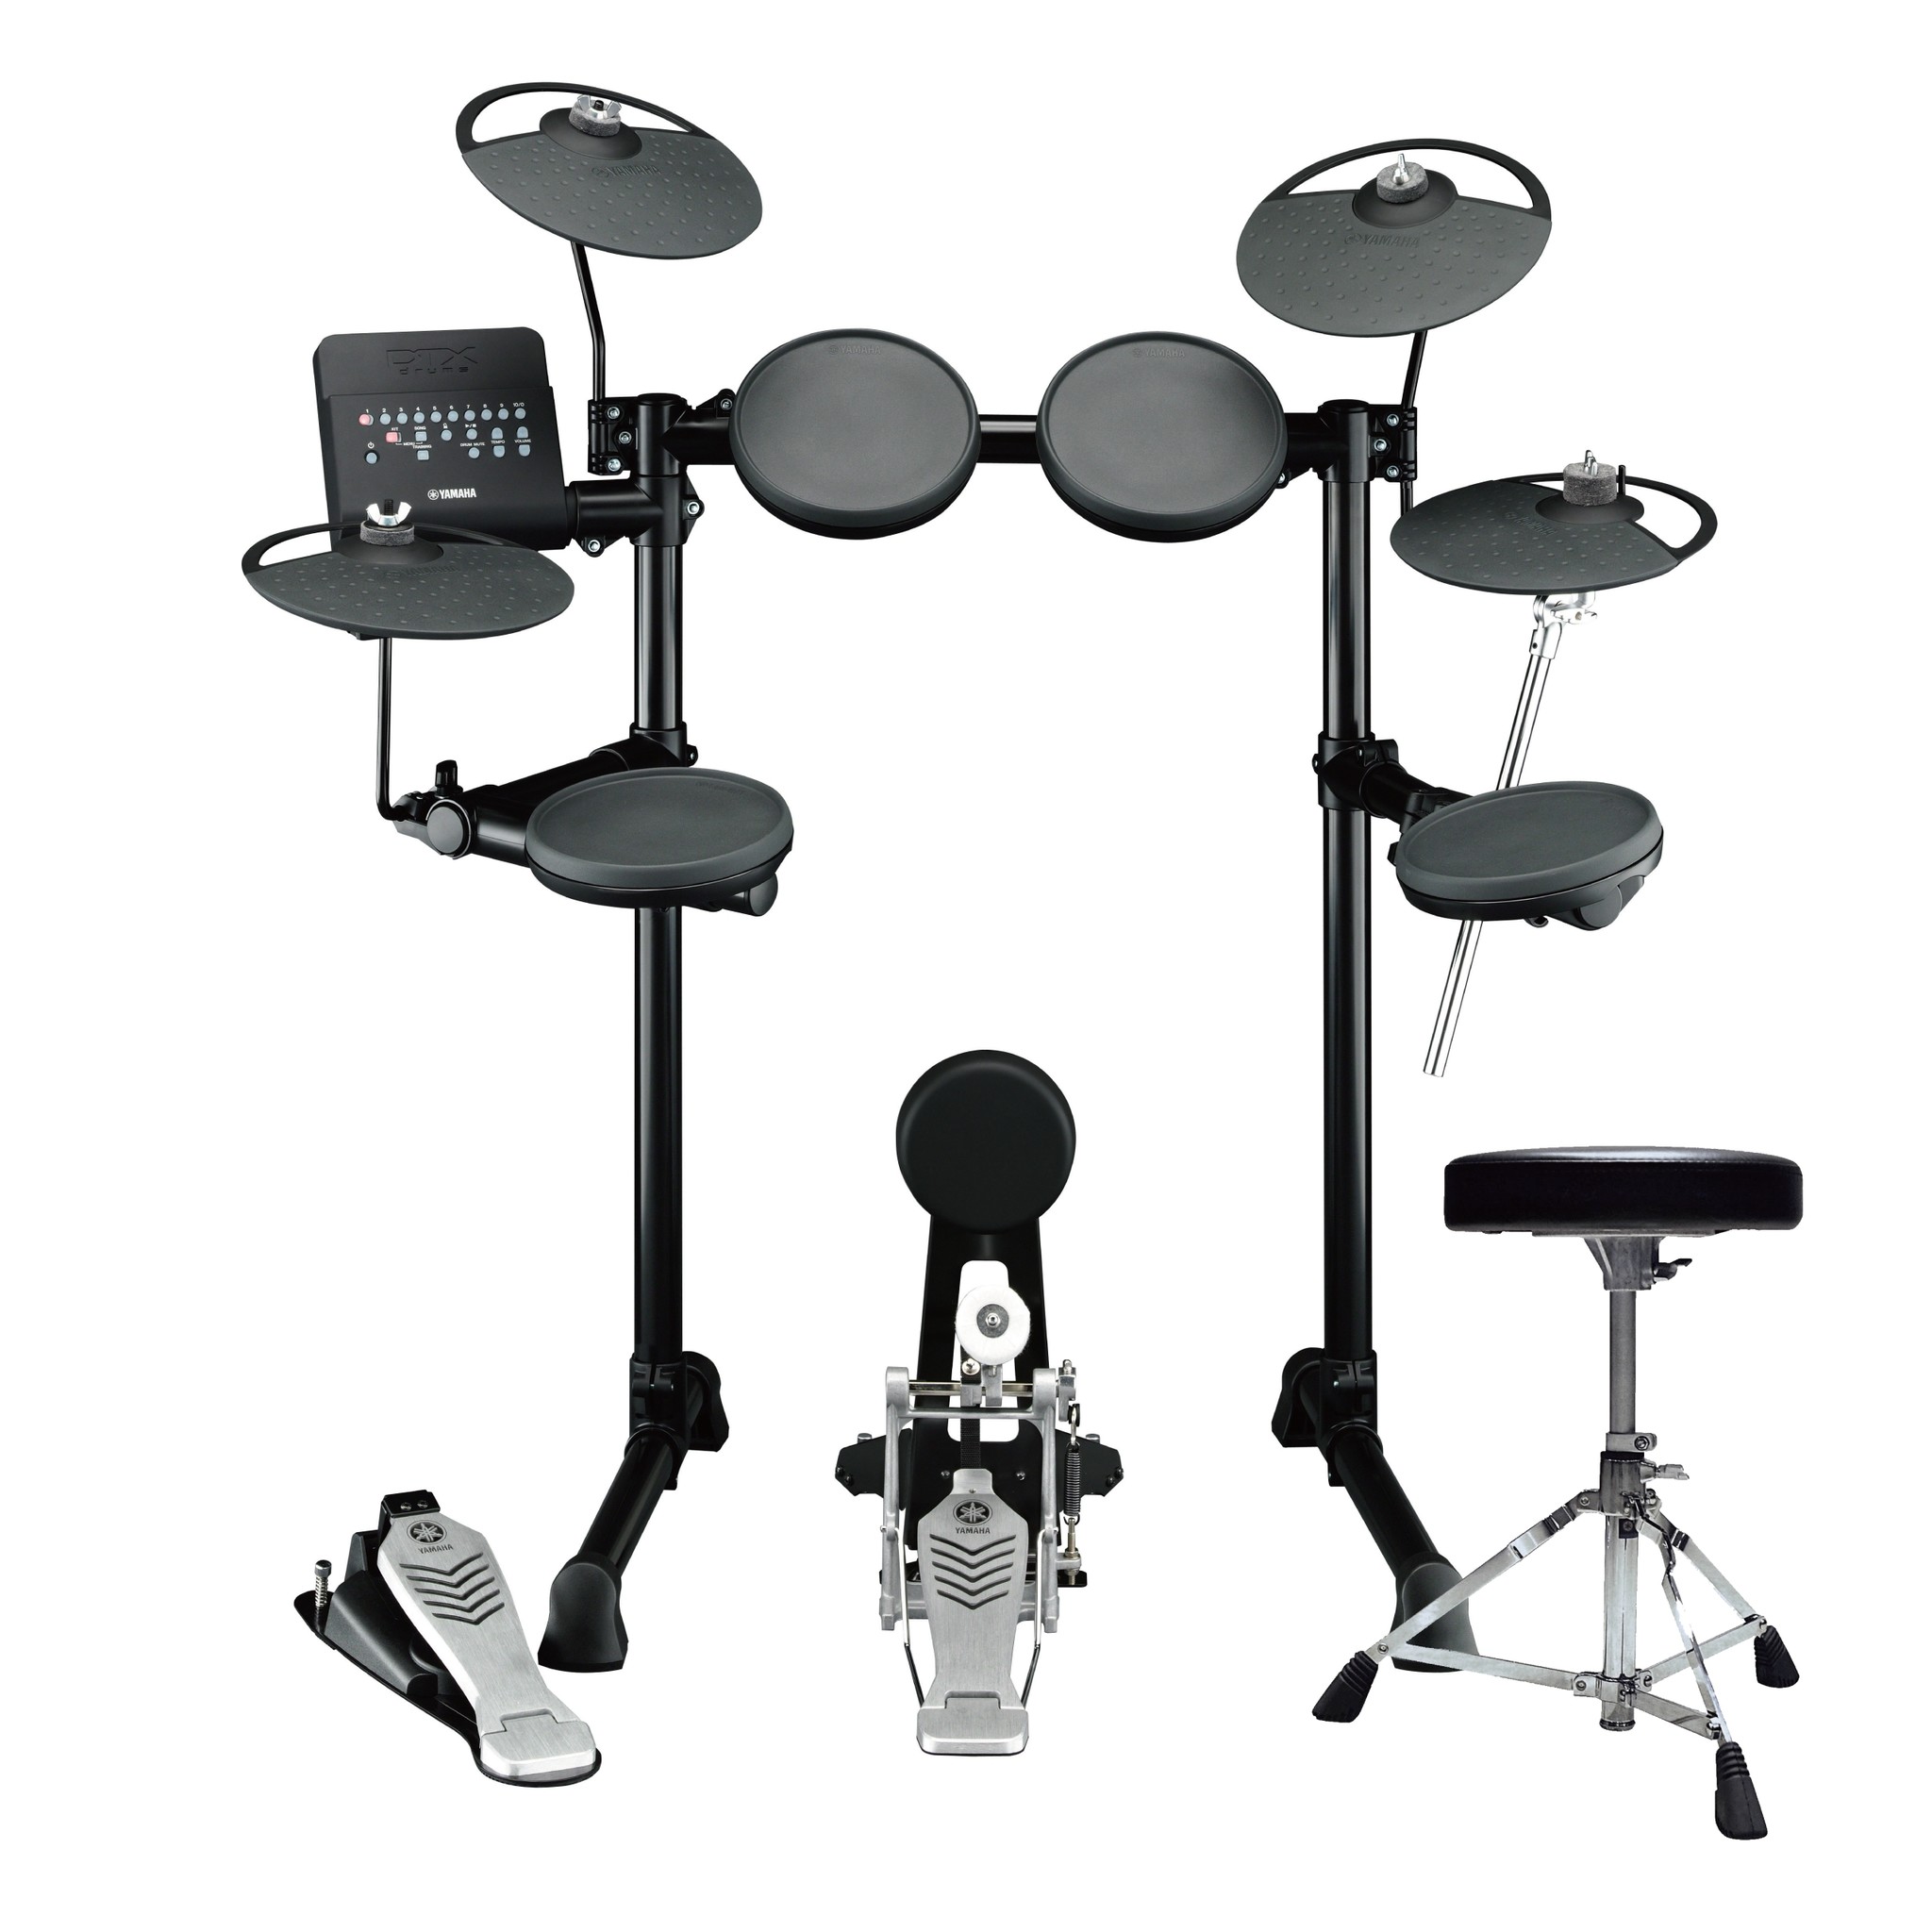 ドラムスツールとフットペダルをパッケージングしたセットモデルを新提案 ヤマハ エレクトロニックドラム「DTX drums」｜株式会社ヤマハ